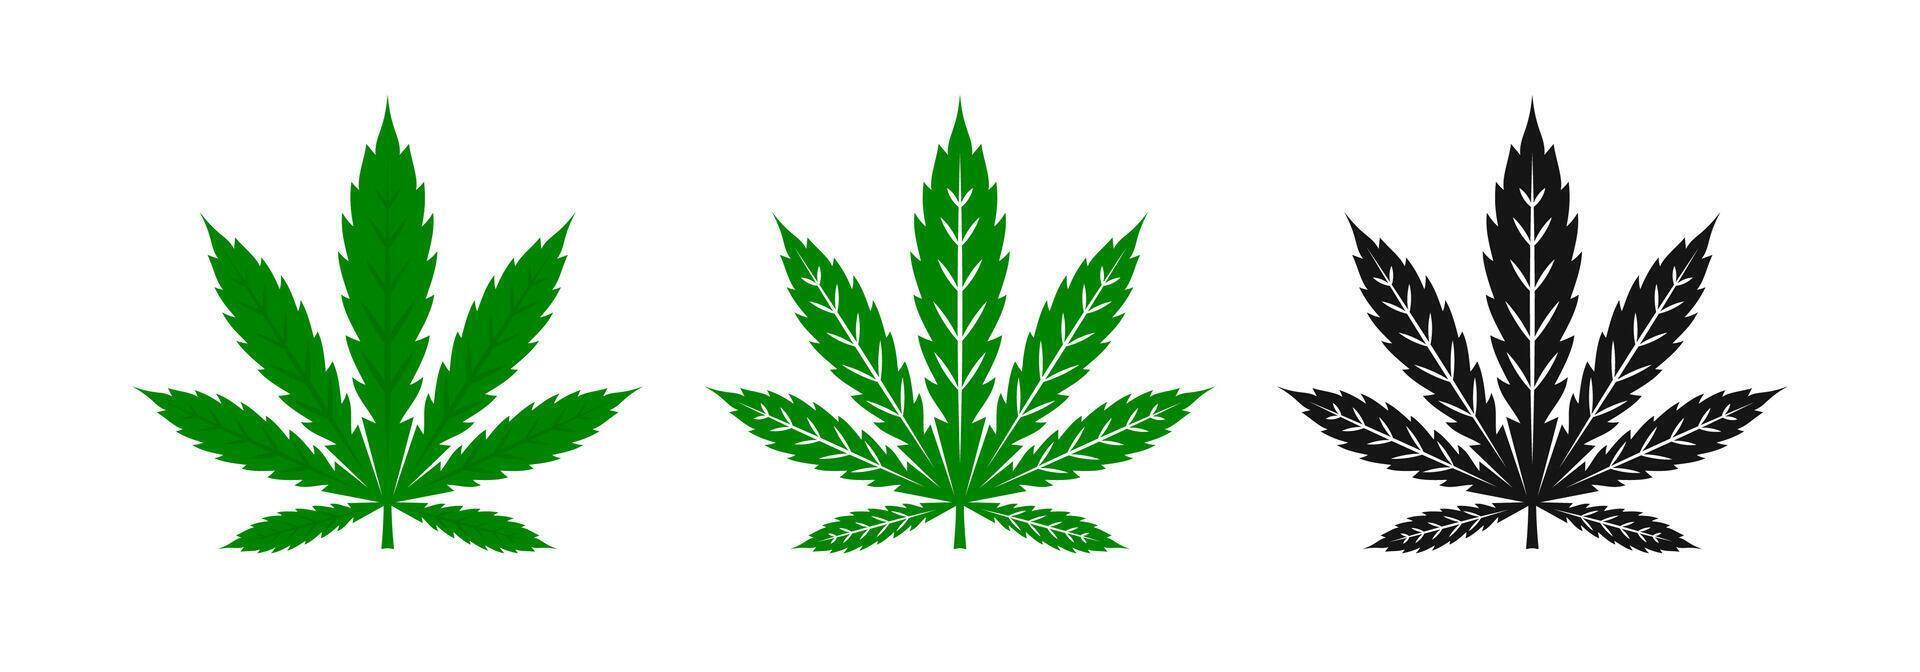 maconha, maconha, erva daninha folhas. maconha cânhamo. cannabis folha ícones. cannabis ícones. vetor